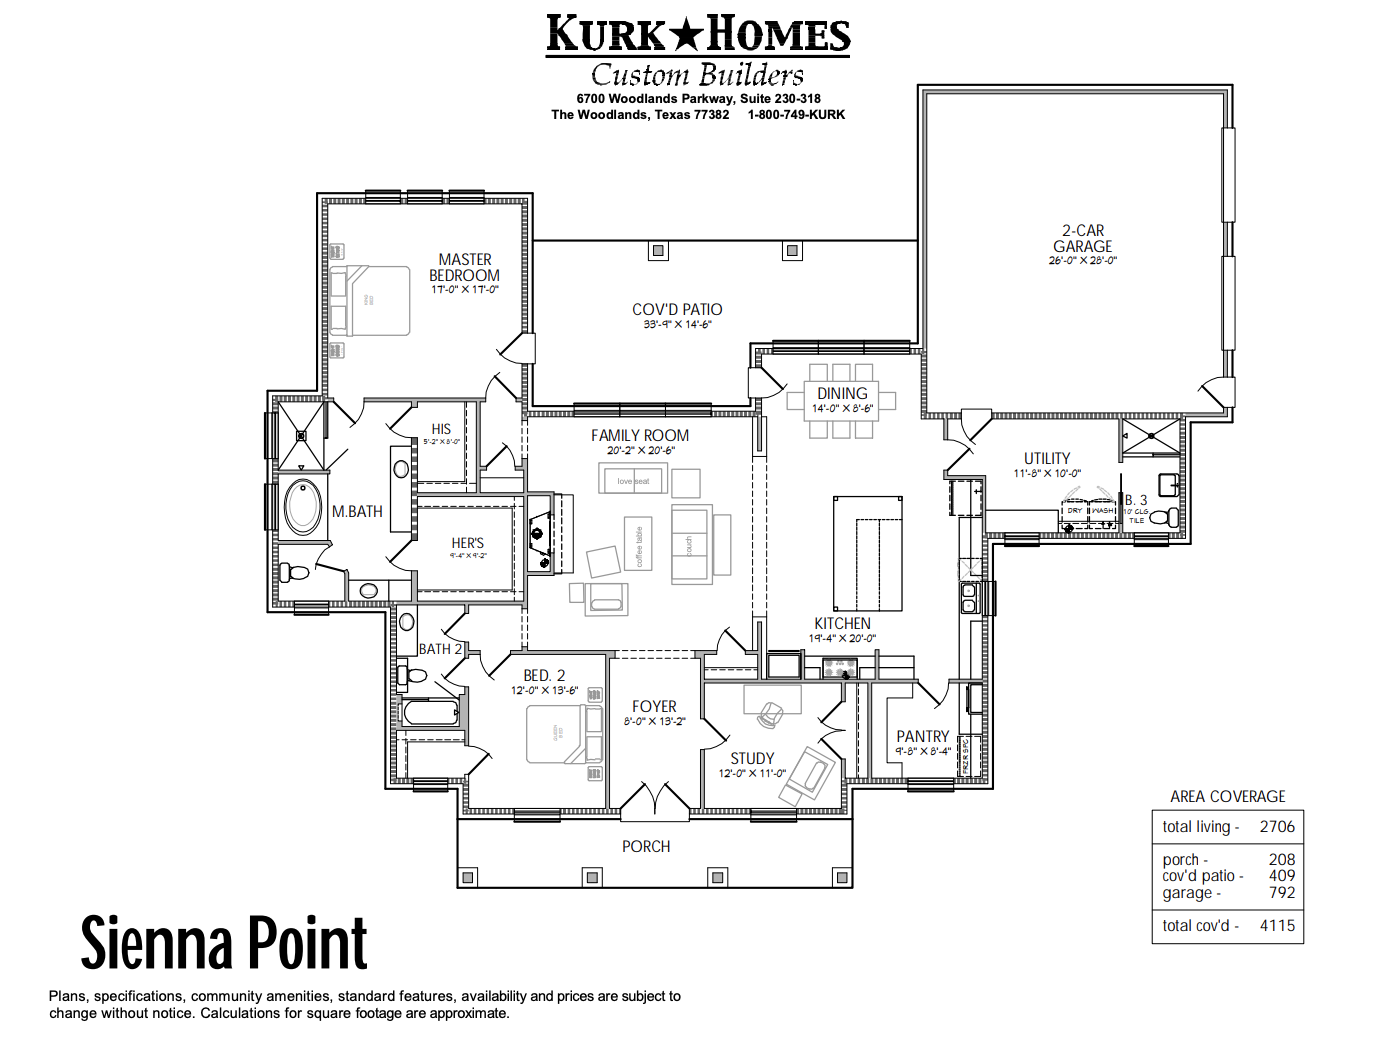 The Sienna Point - Home Plan Design